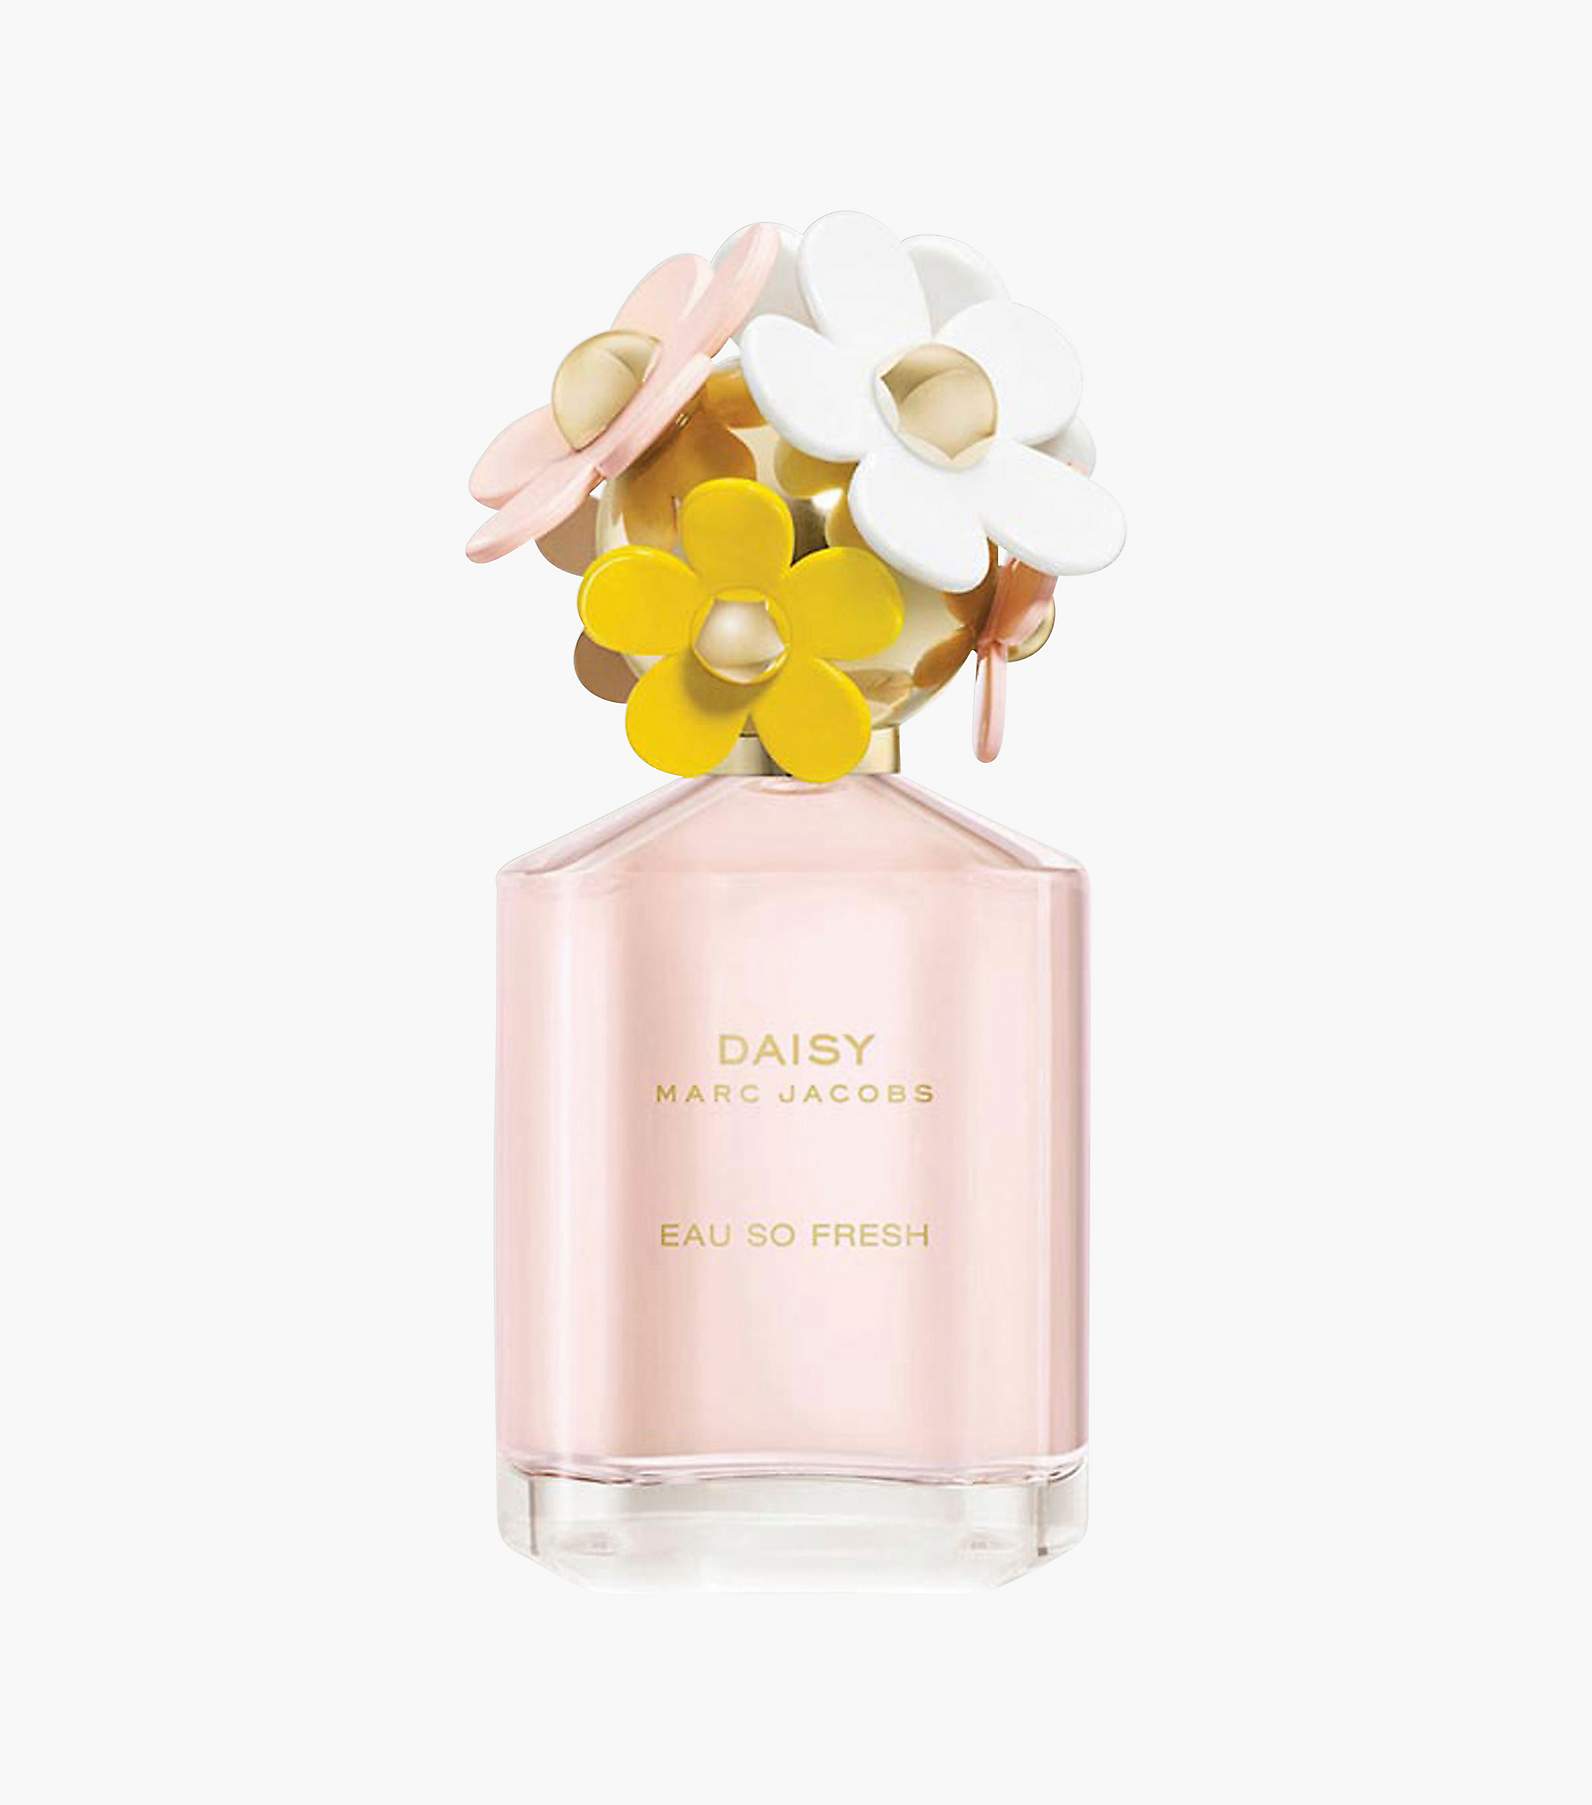 Daisy Eau So Intense Eau de Parfum 3.4oz Fragrance